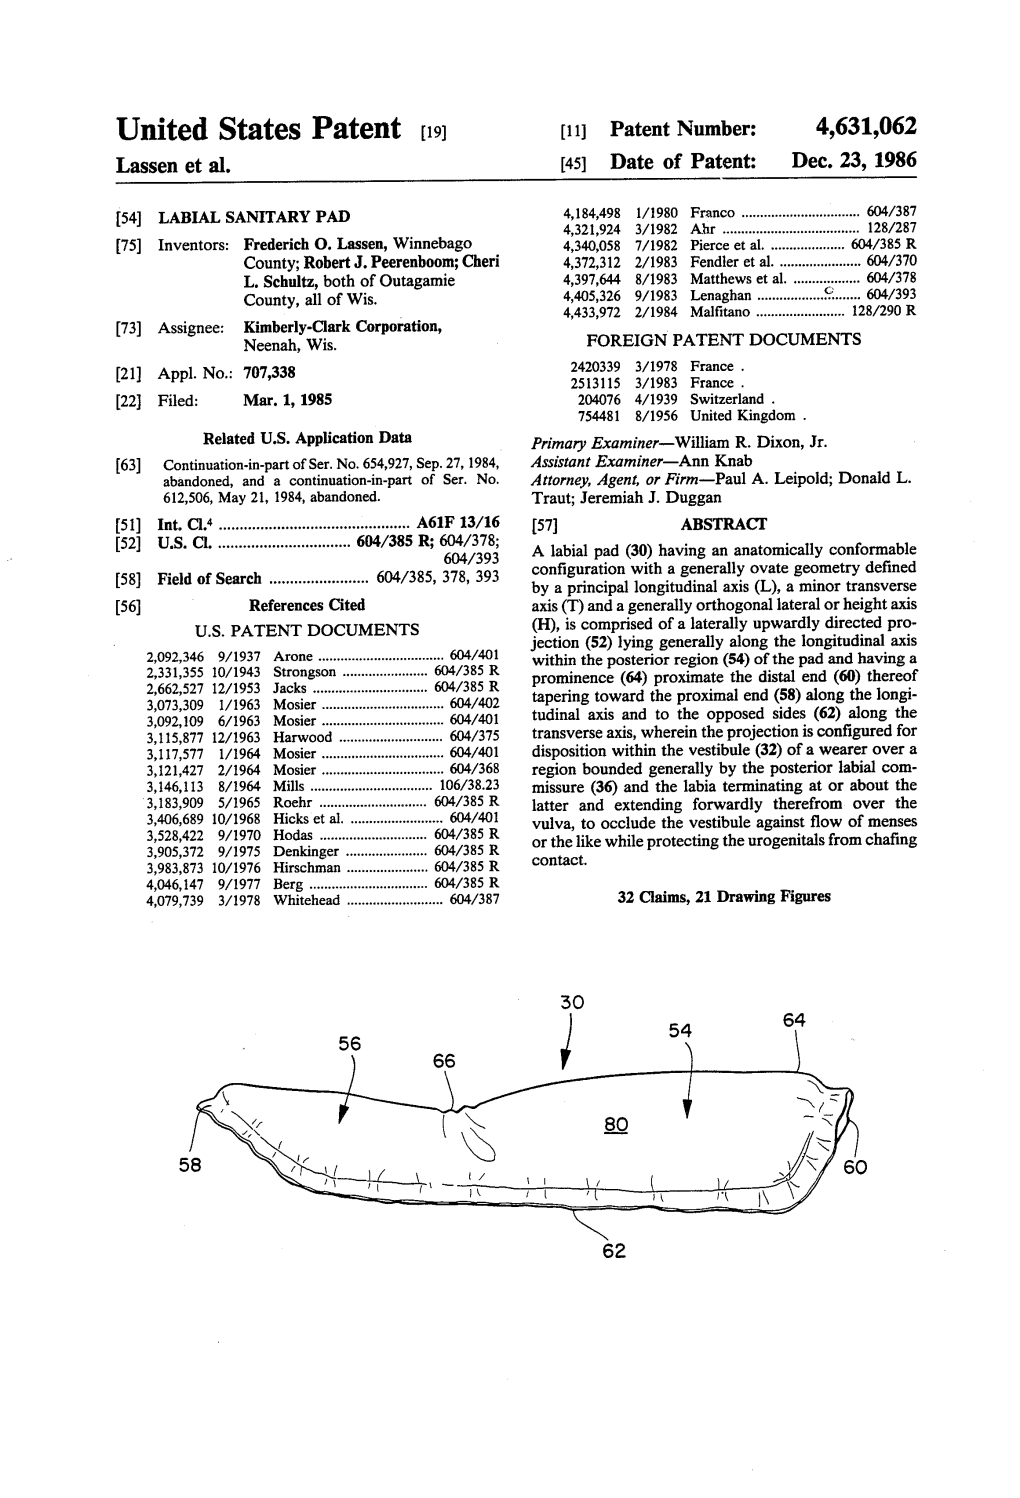 United States Patent (19) 11 Patent Number: 4,631,062 Lassen Et Al